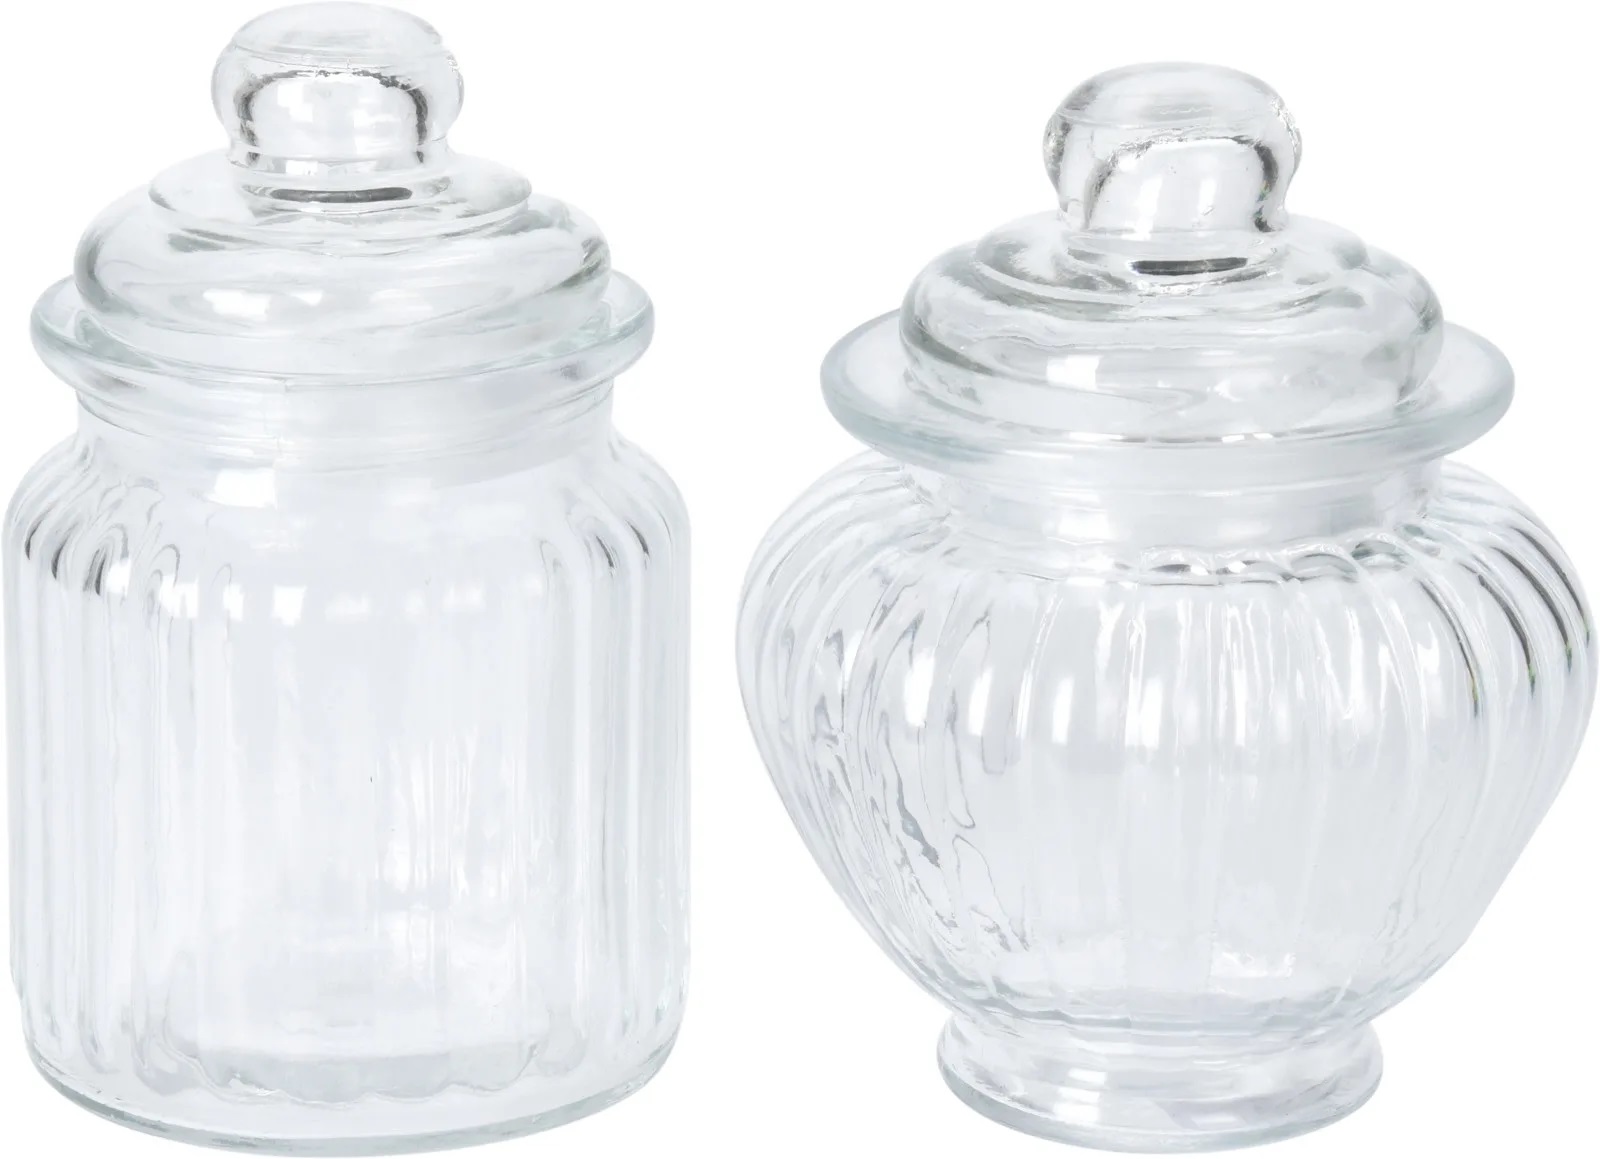 Storage Glass Jar